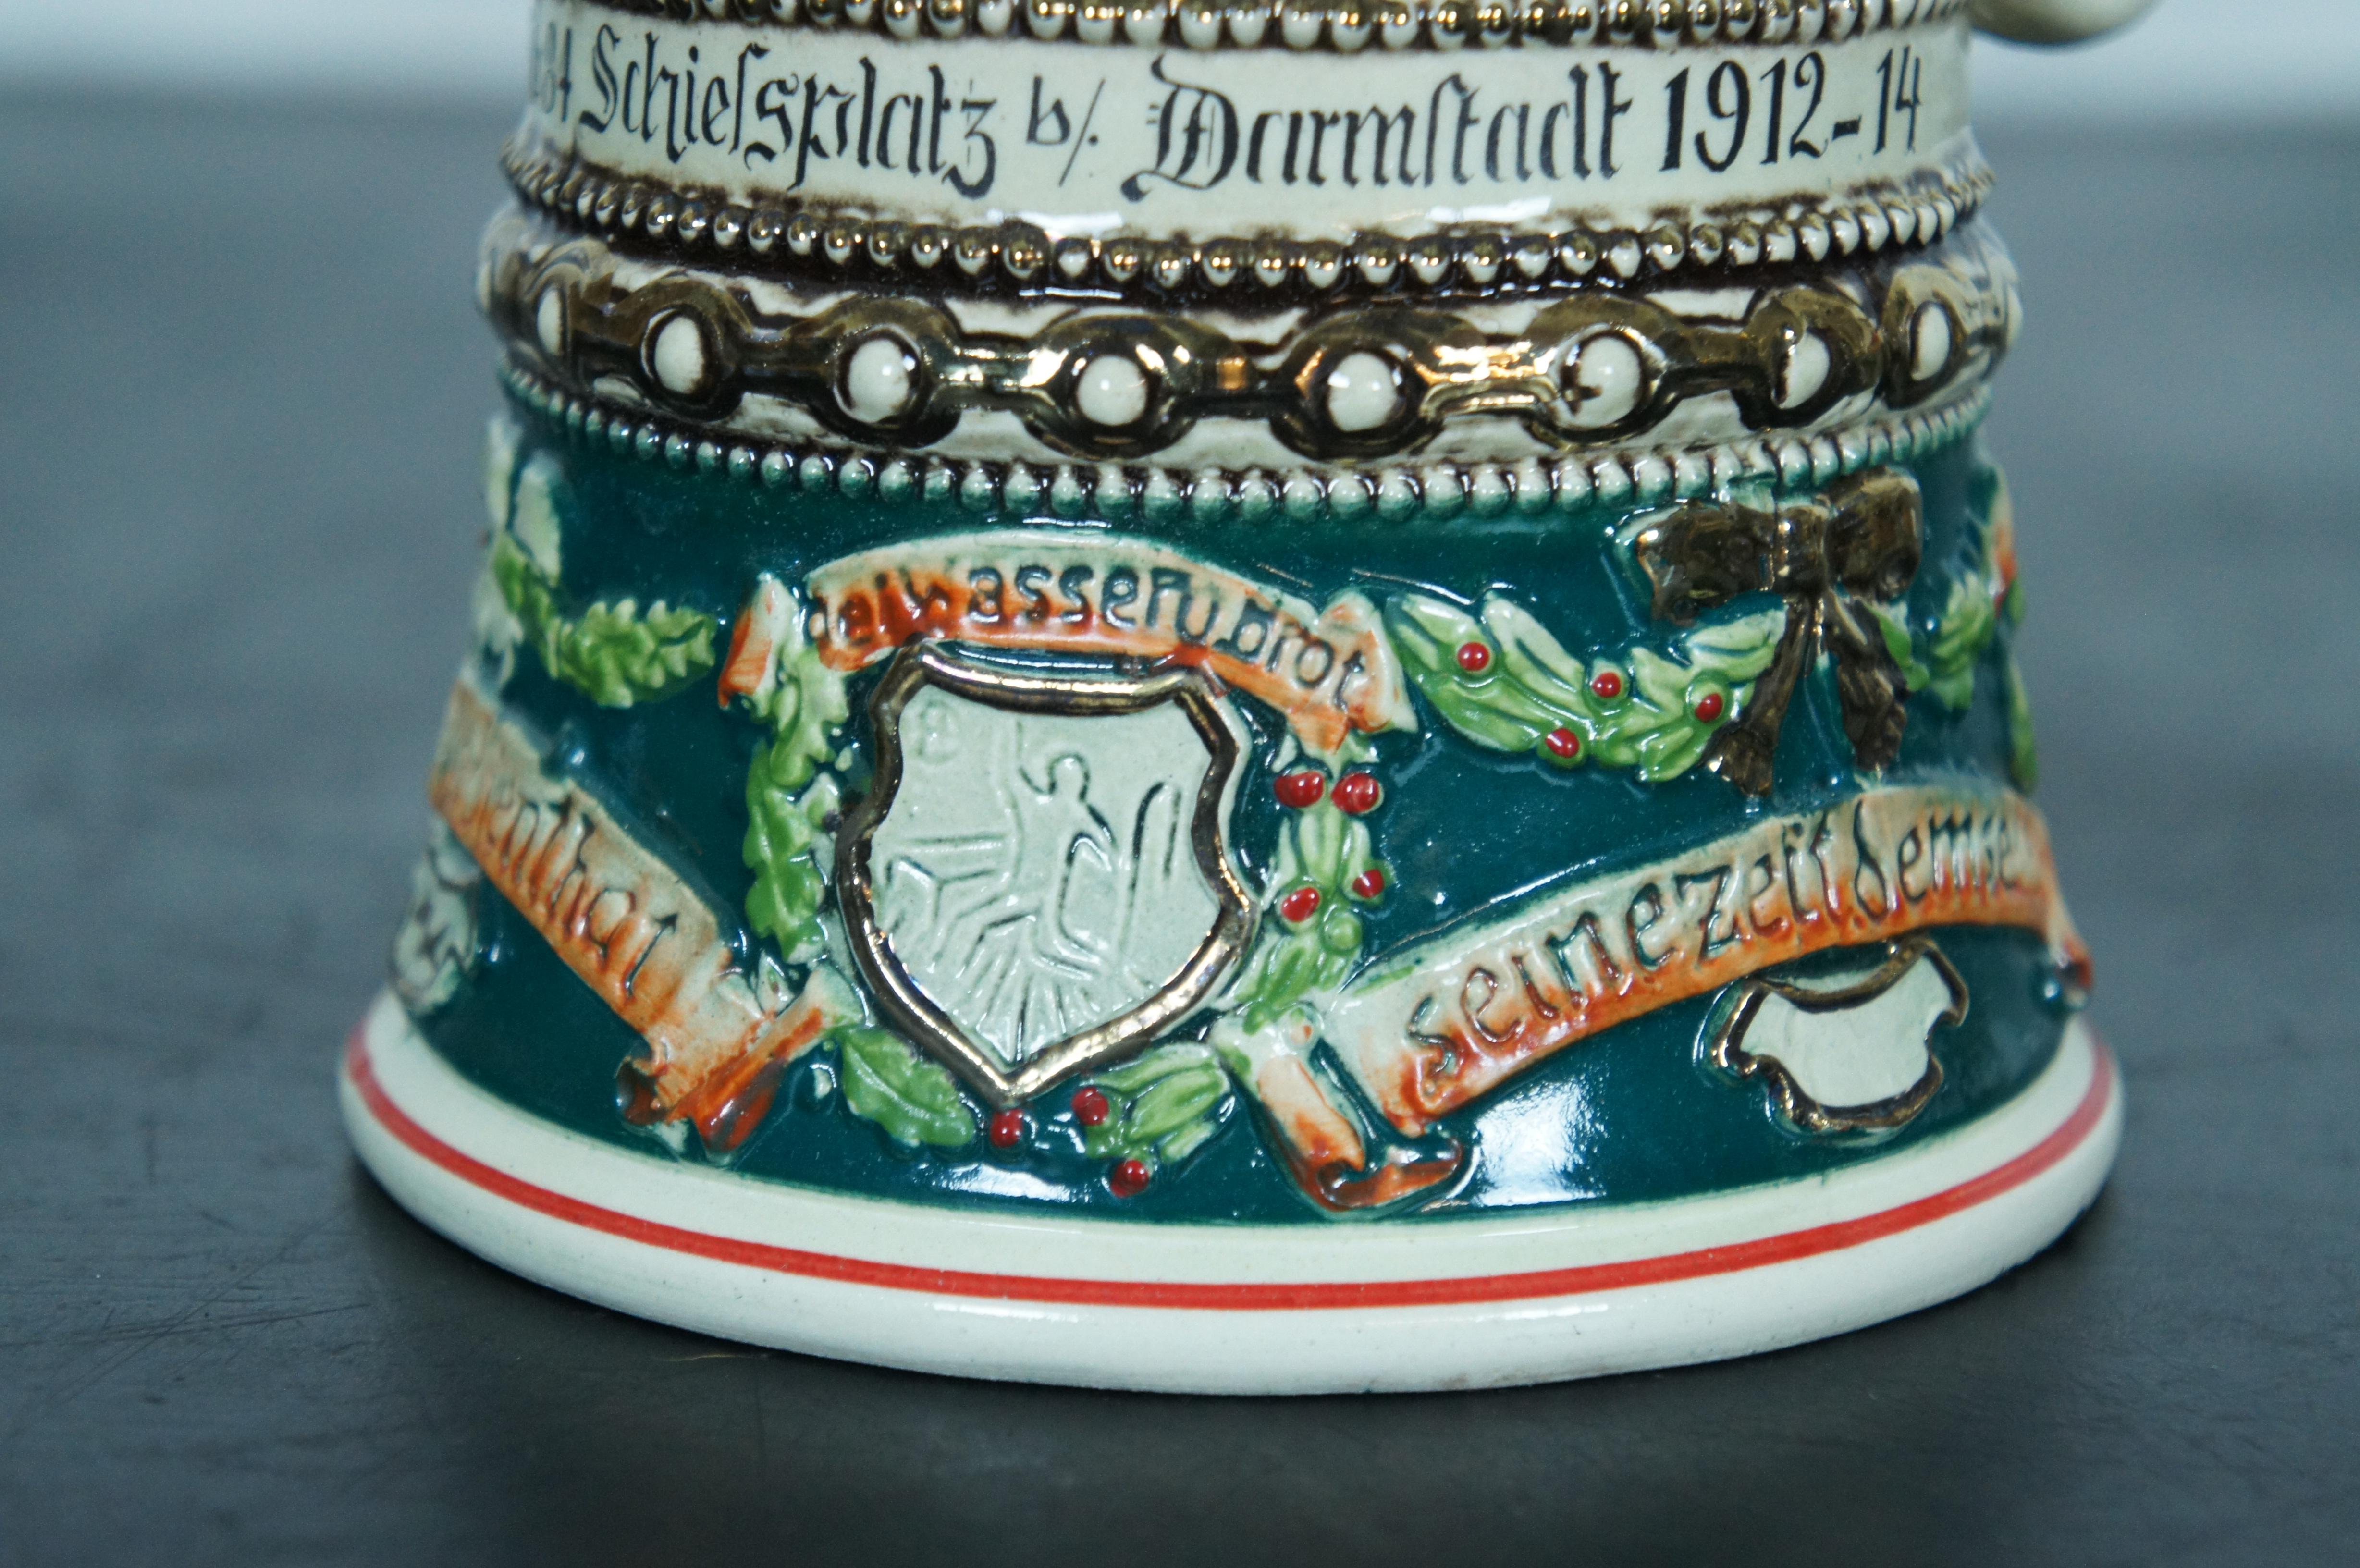 Ancienne porcelaine allemande de l'artillerie de réserve de la Première Guerre mondiale Beer Stein 1912-1914 6